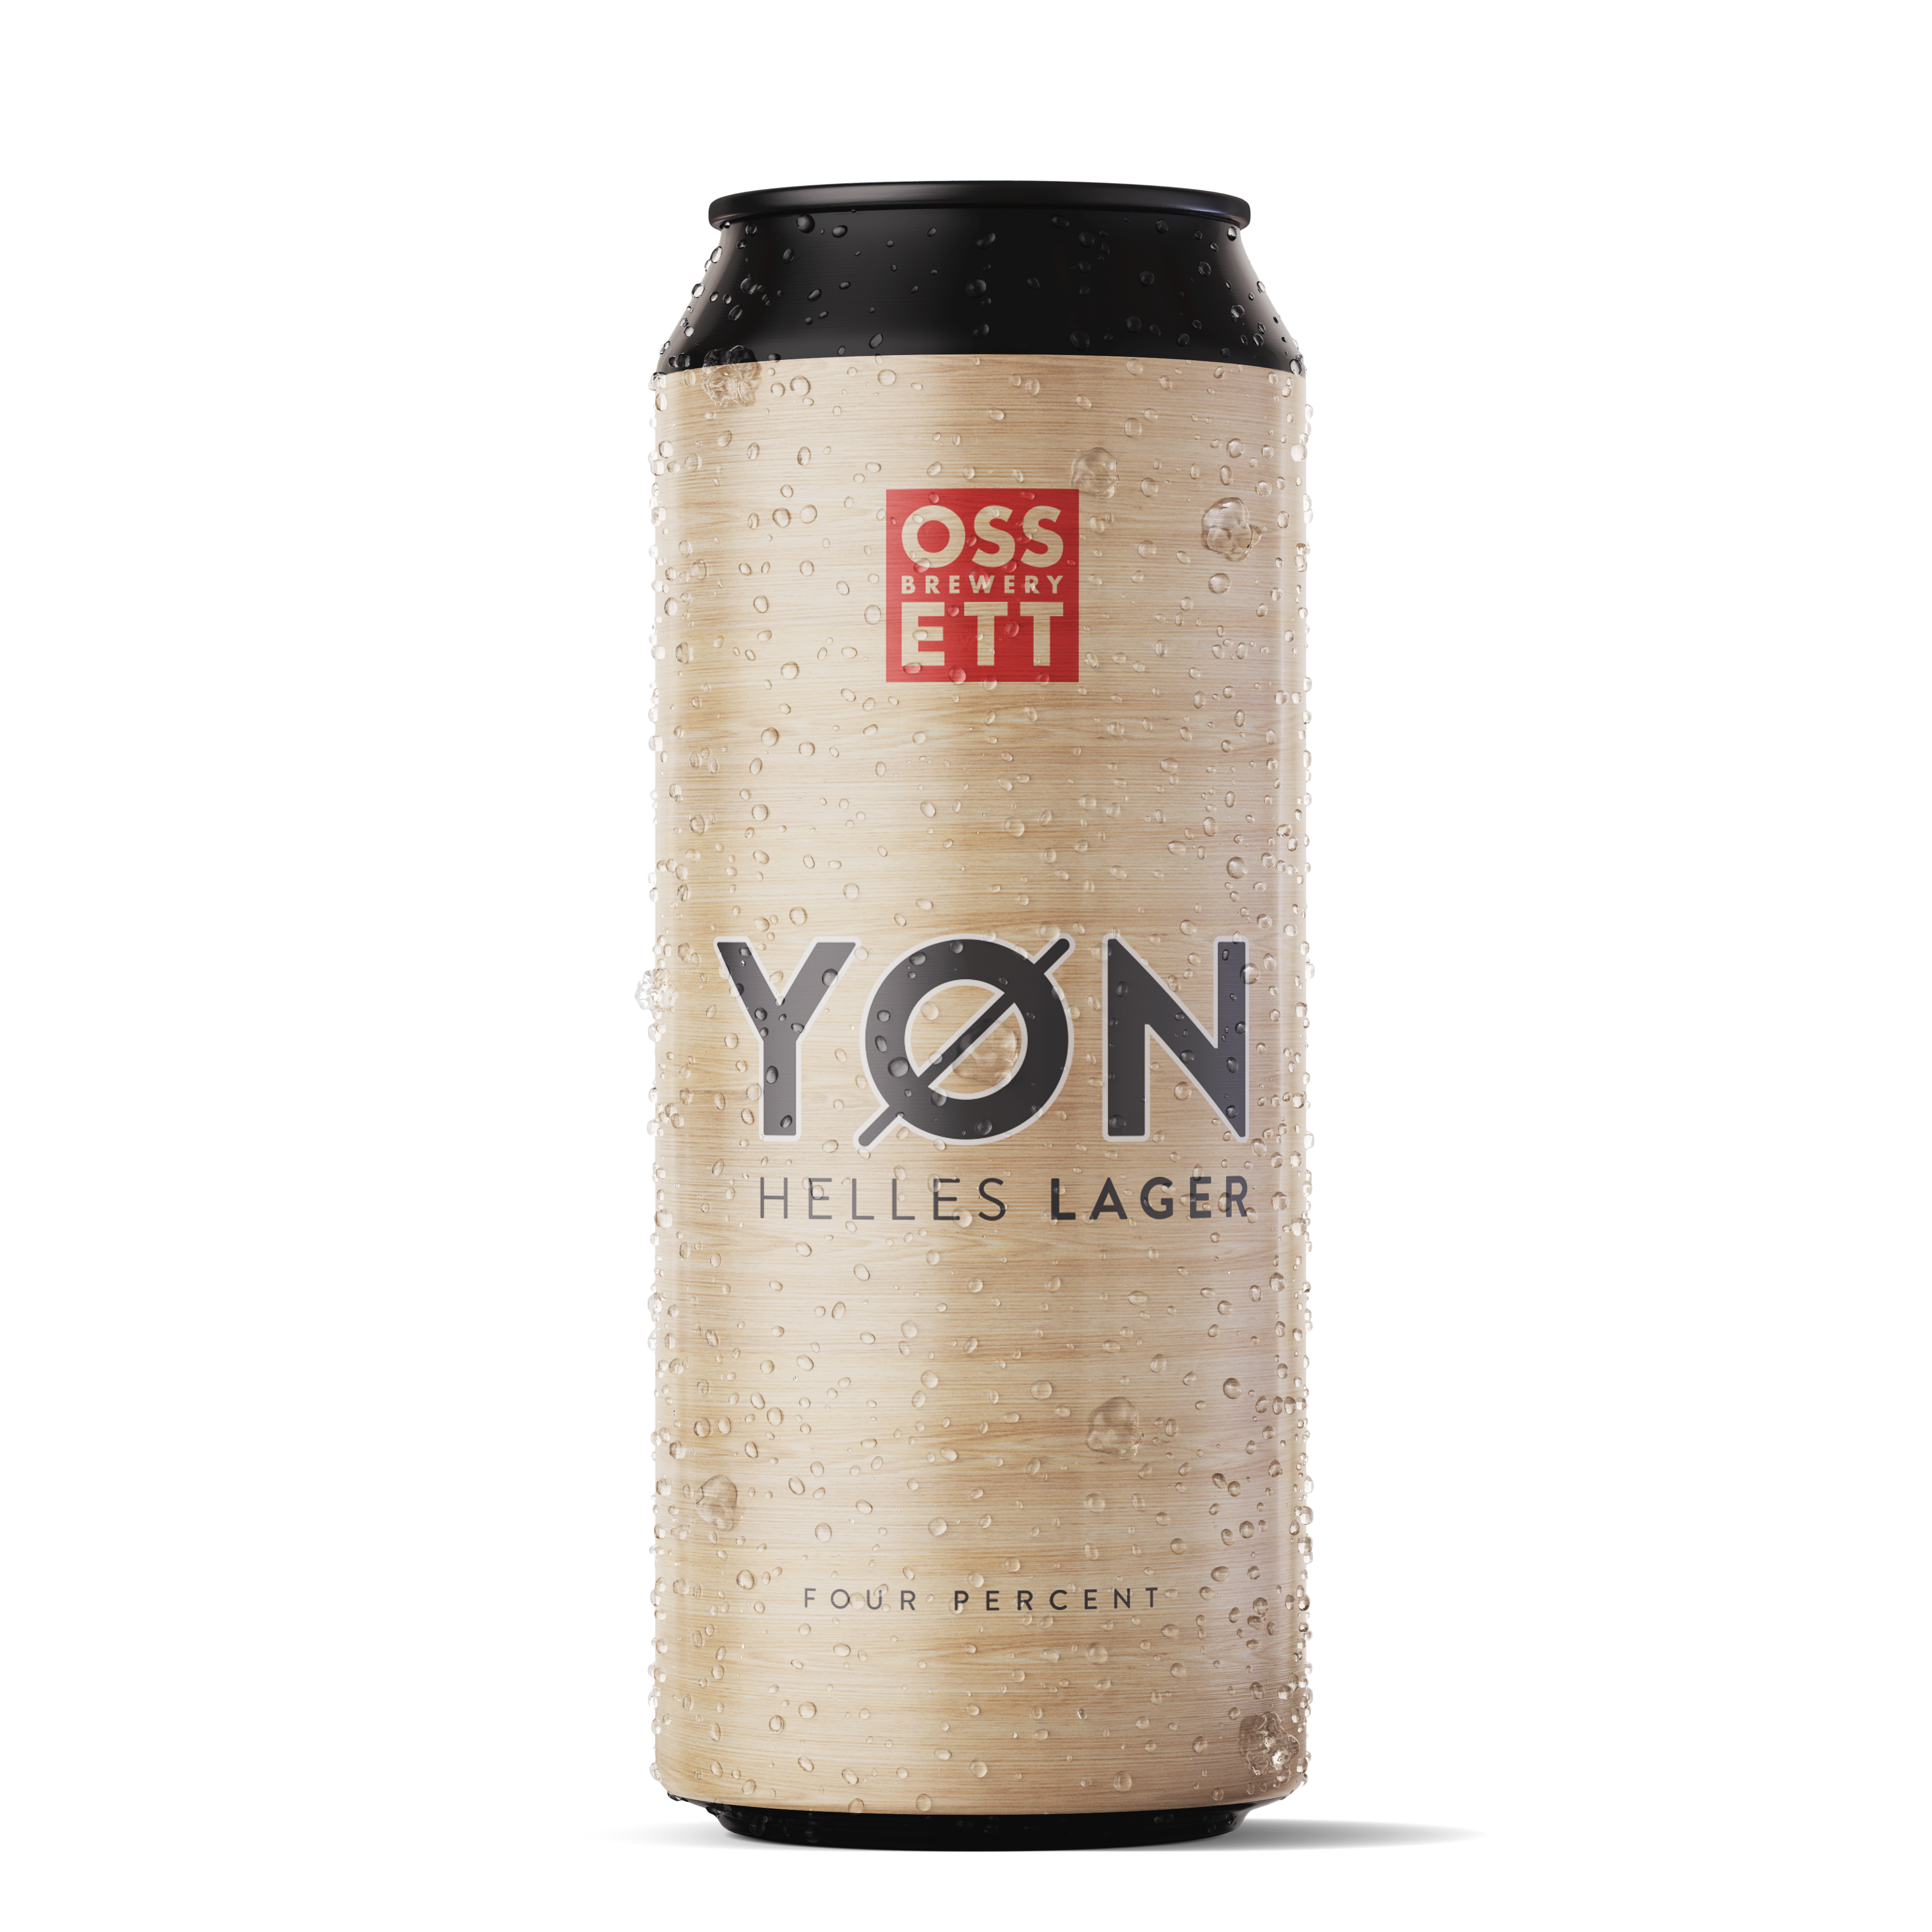 YØN Lager – Ossett Brewery